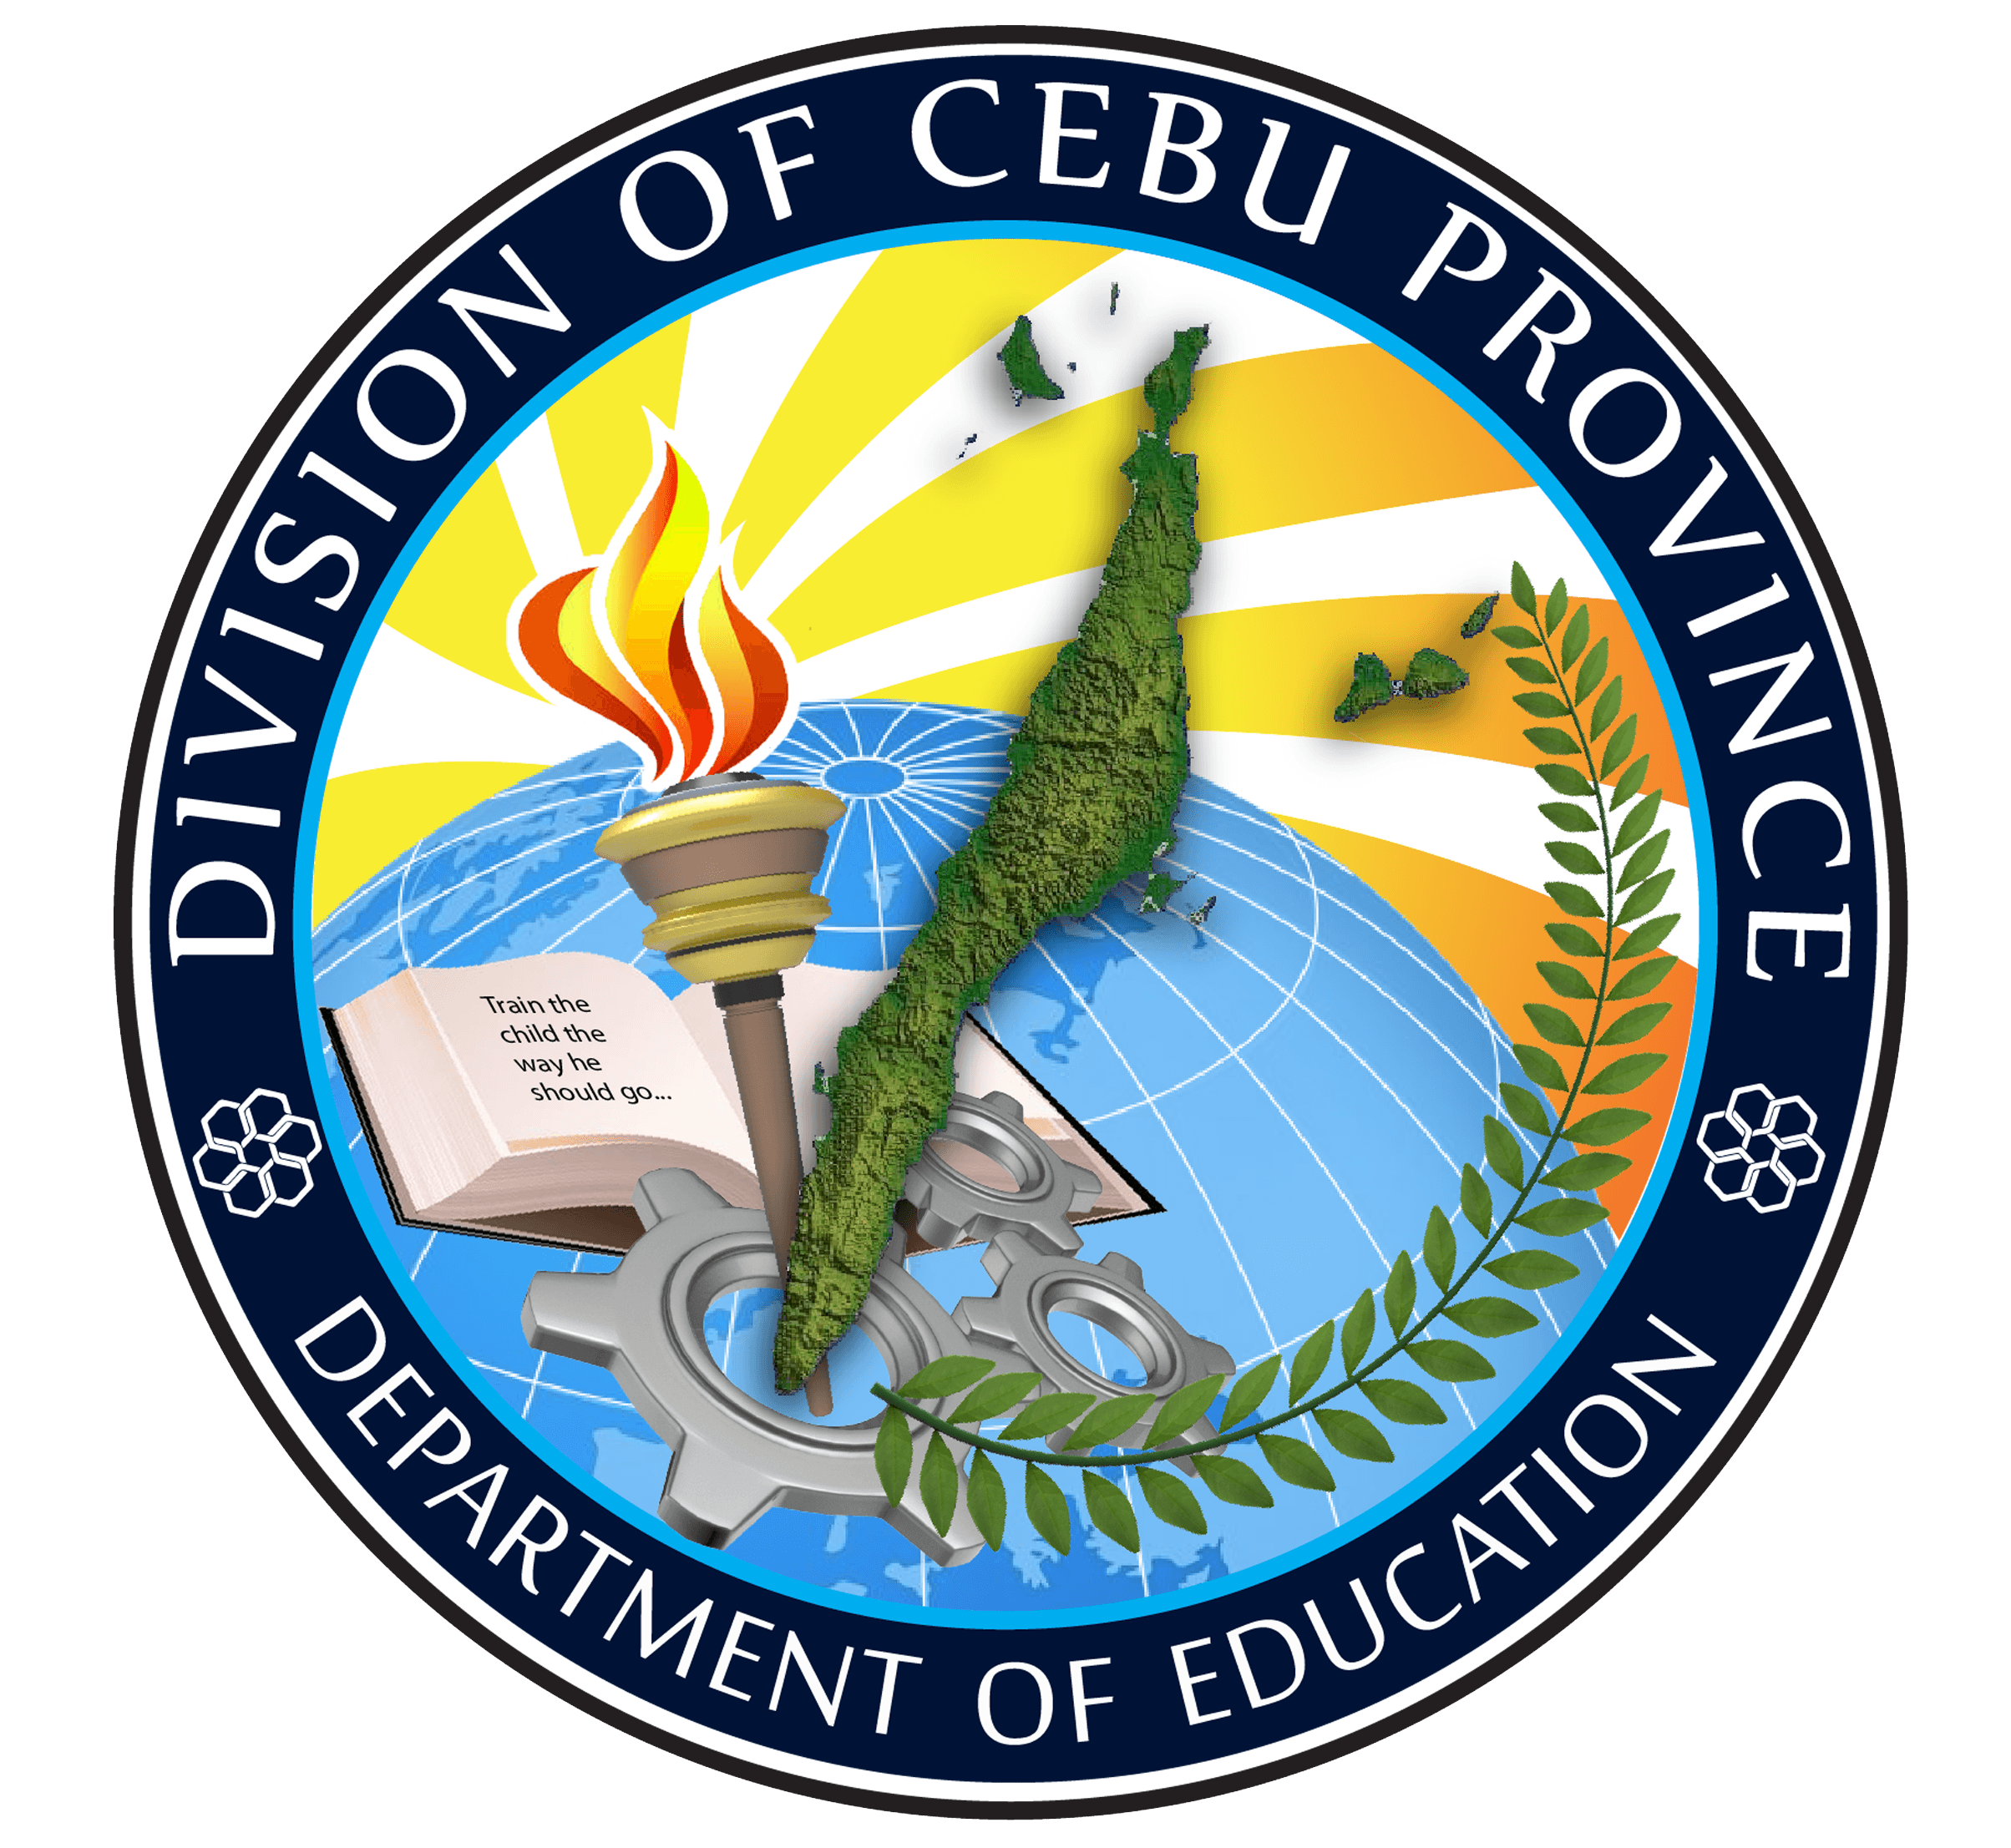 DepEd Logo - ICT Resources. DepEd Cebu Province Website